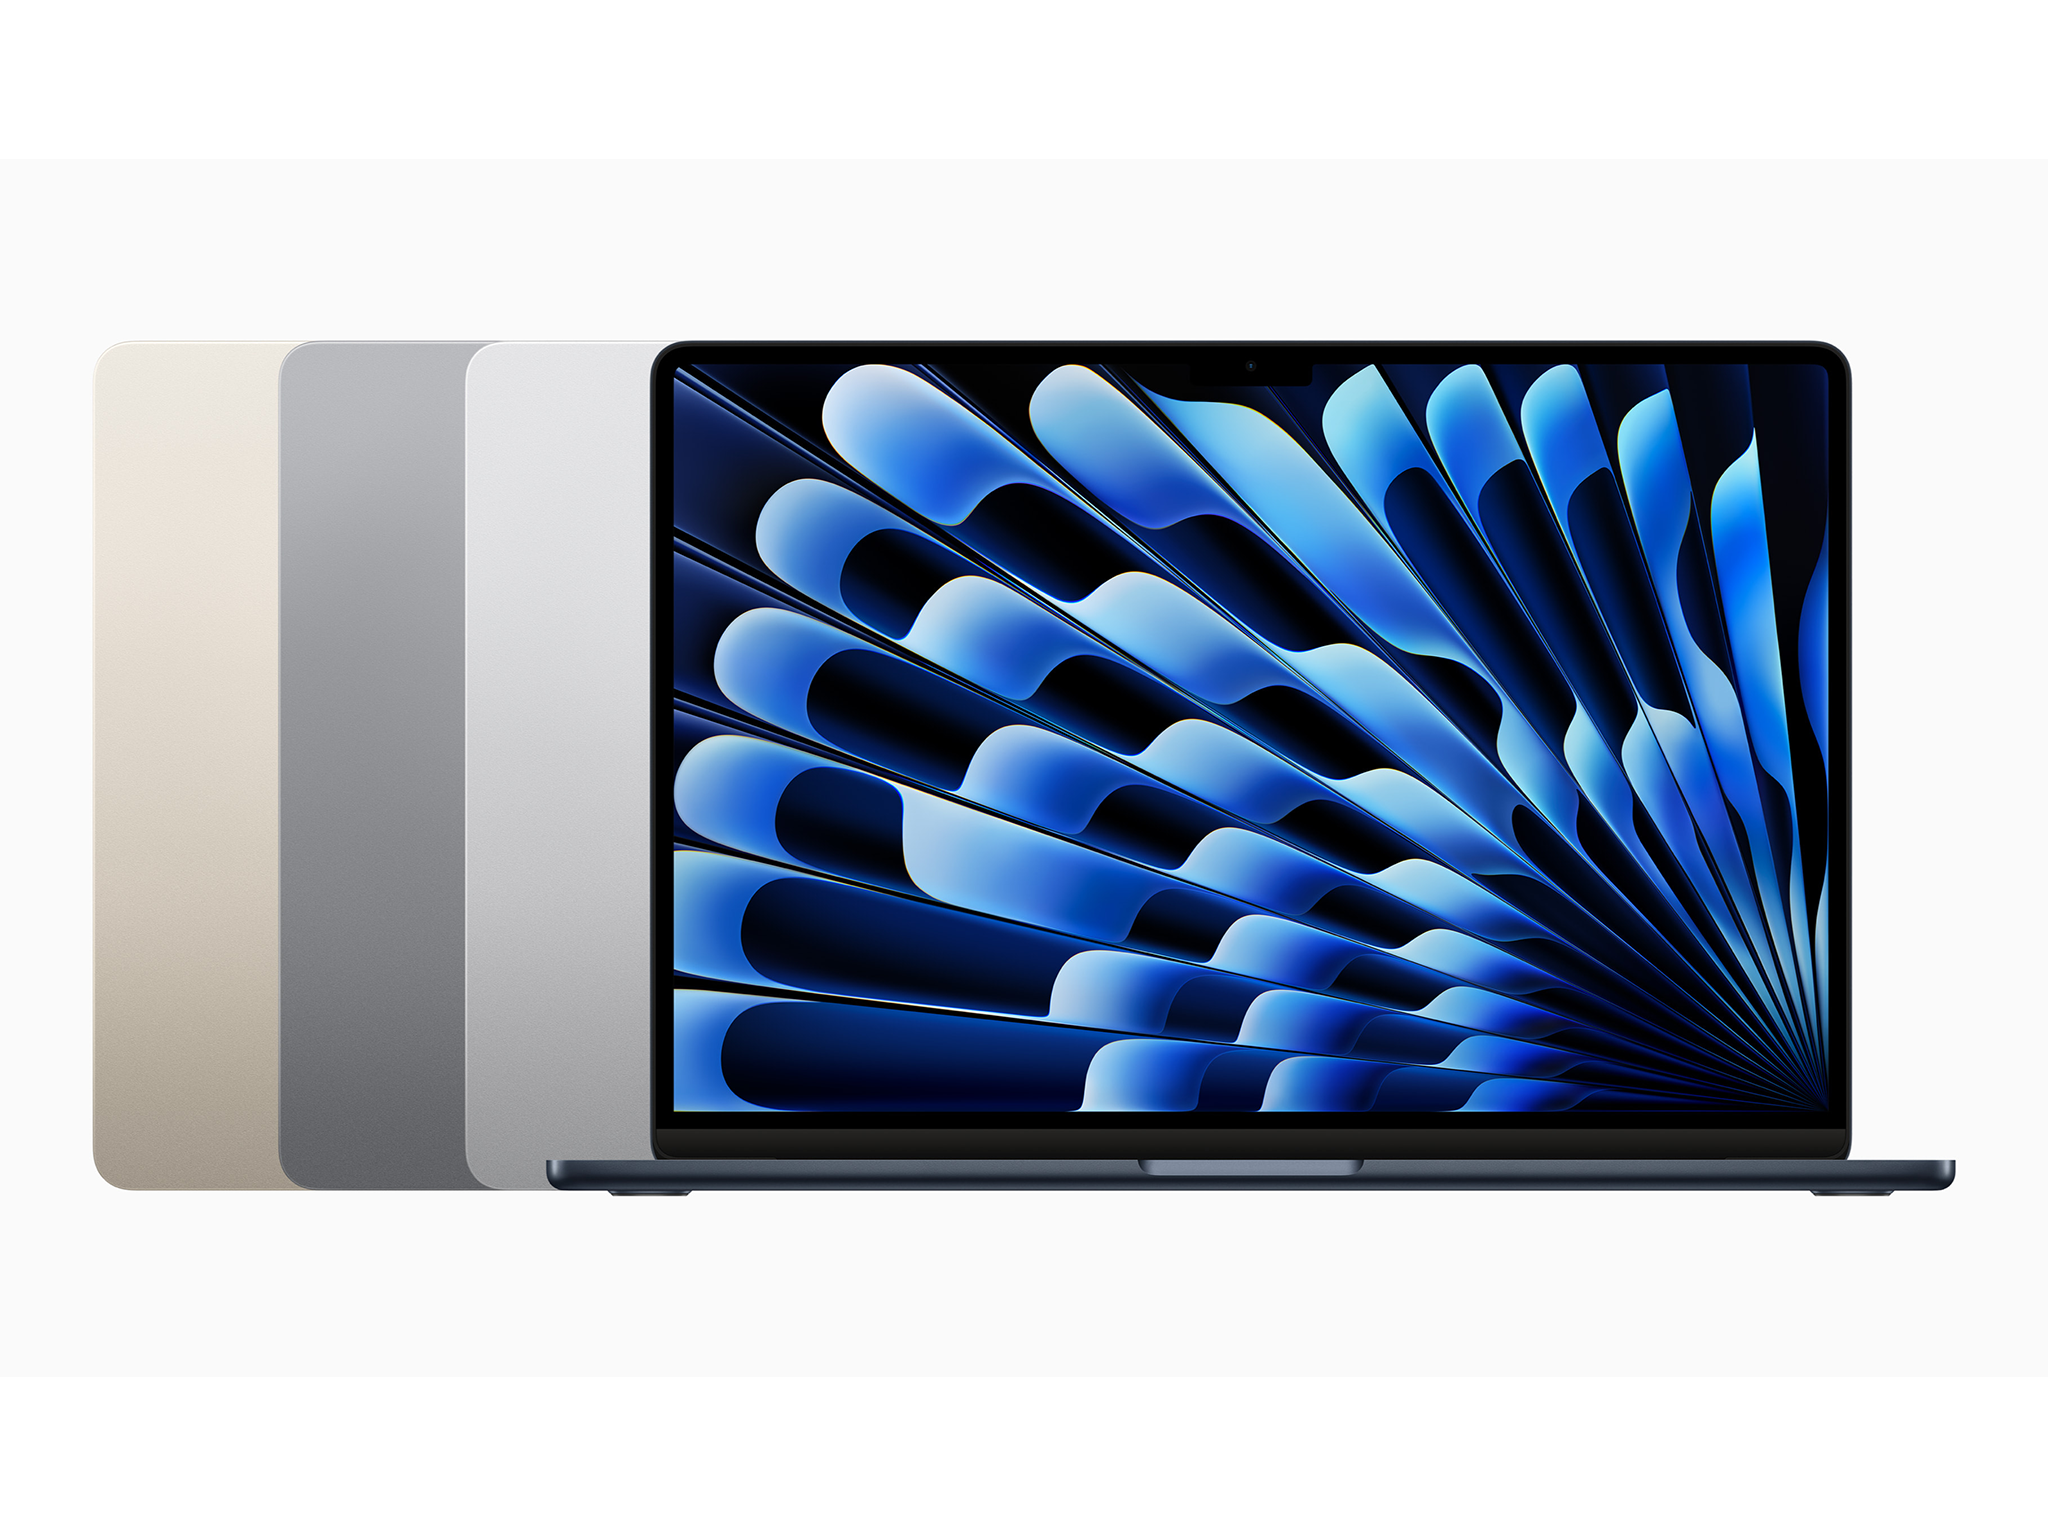 Apple 15in MacBook air review